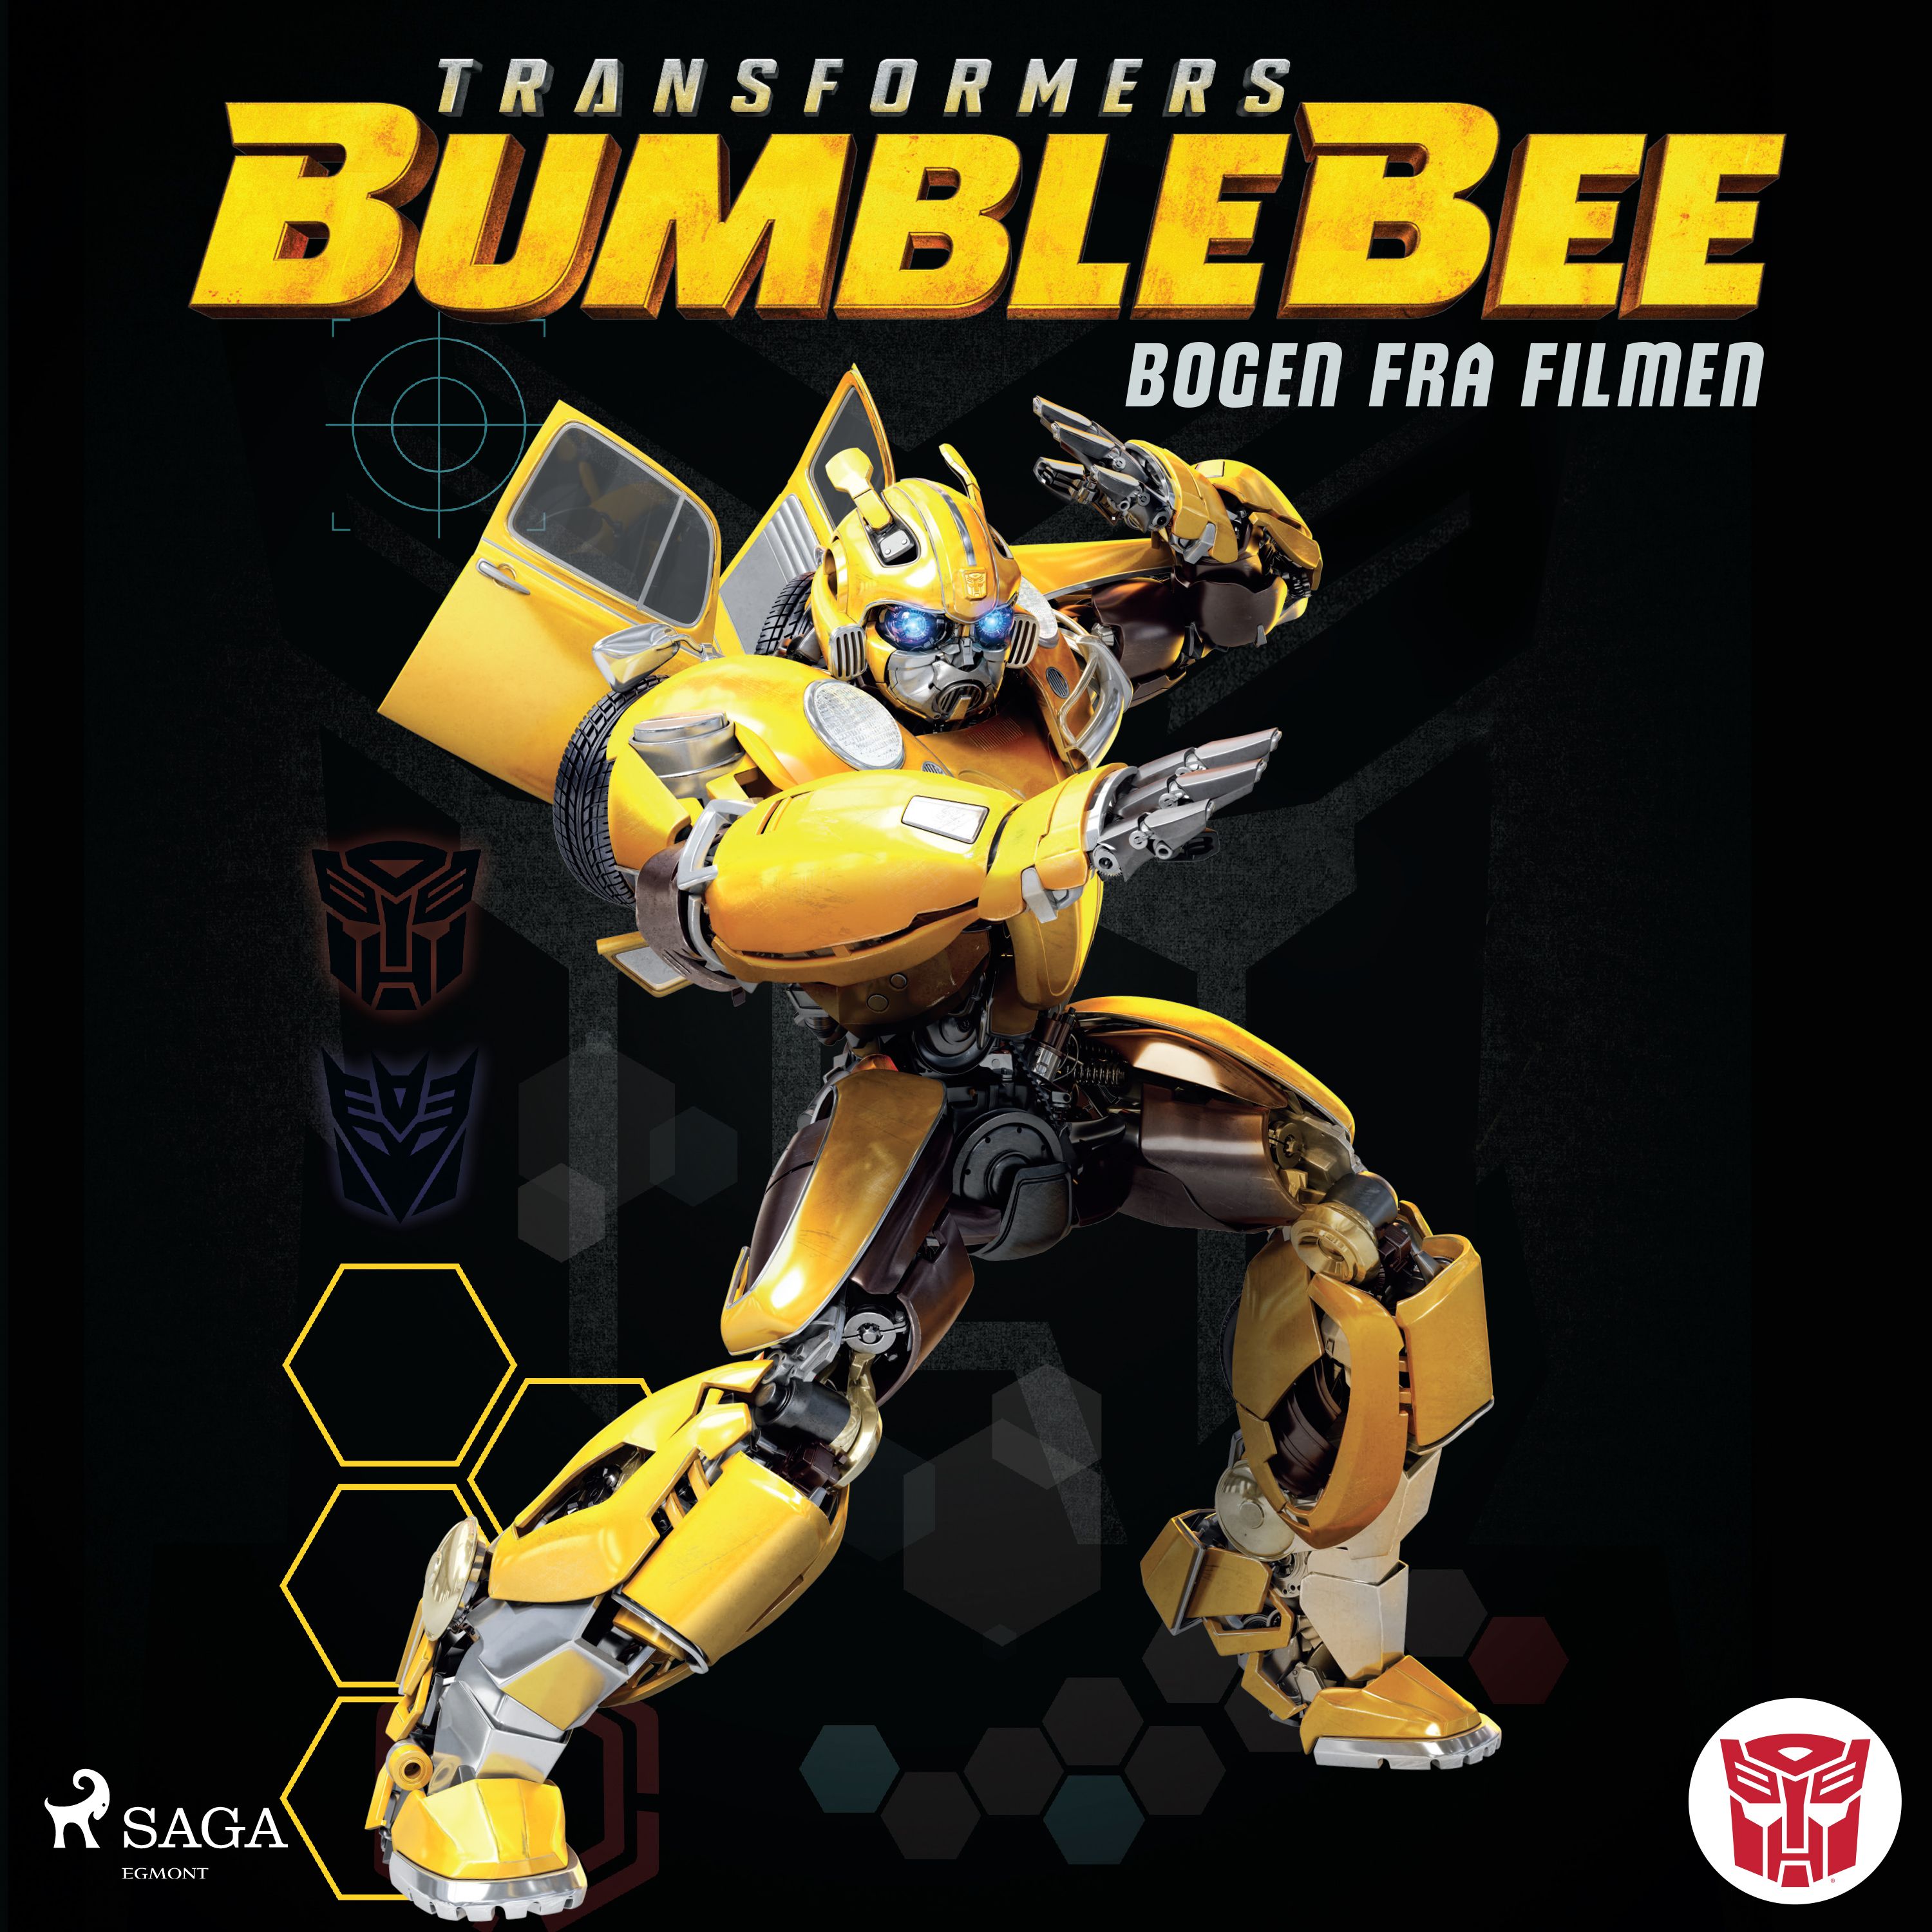 Transformers - Bumblebee, lydbog af Ryder Windham